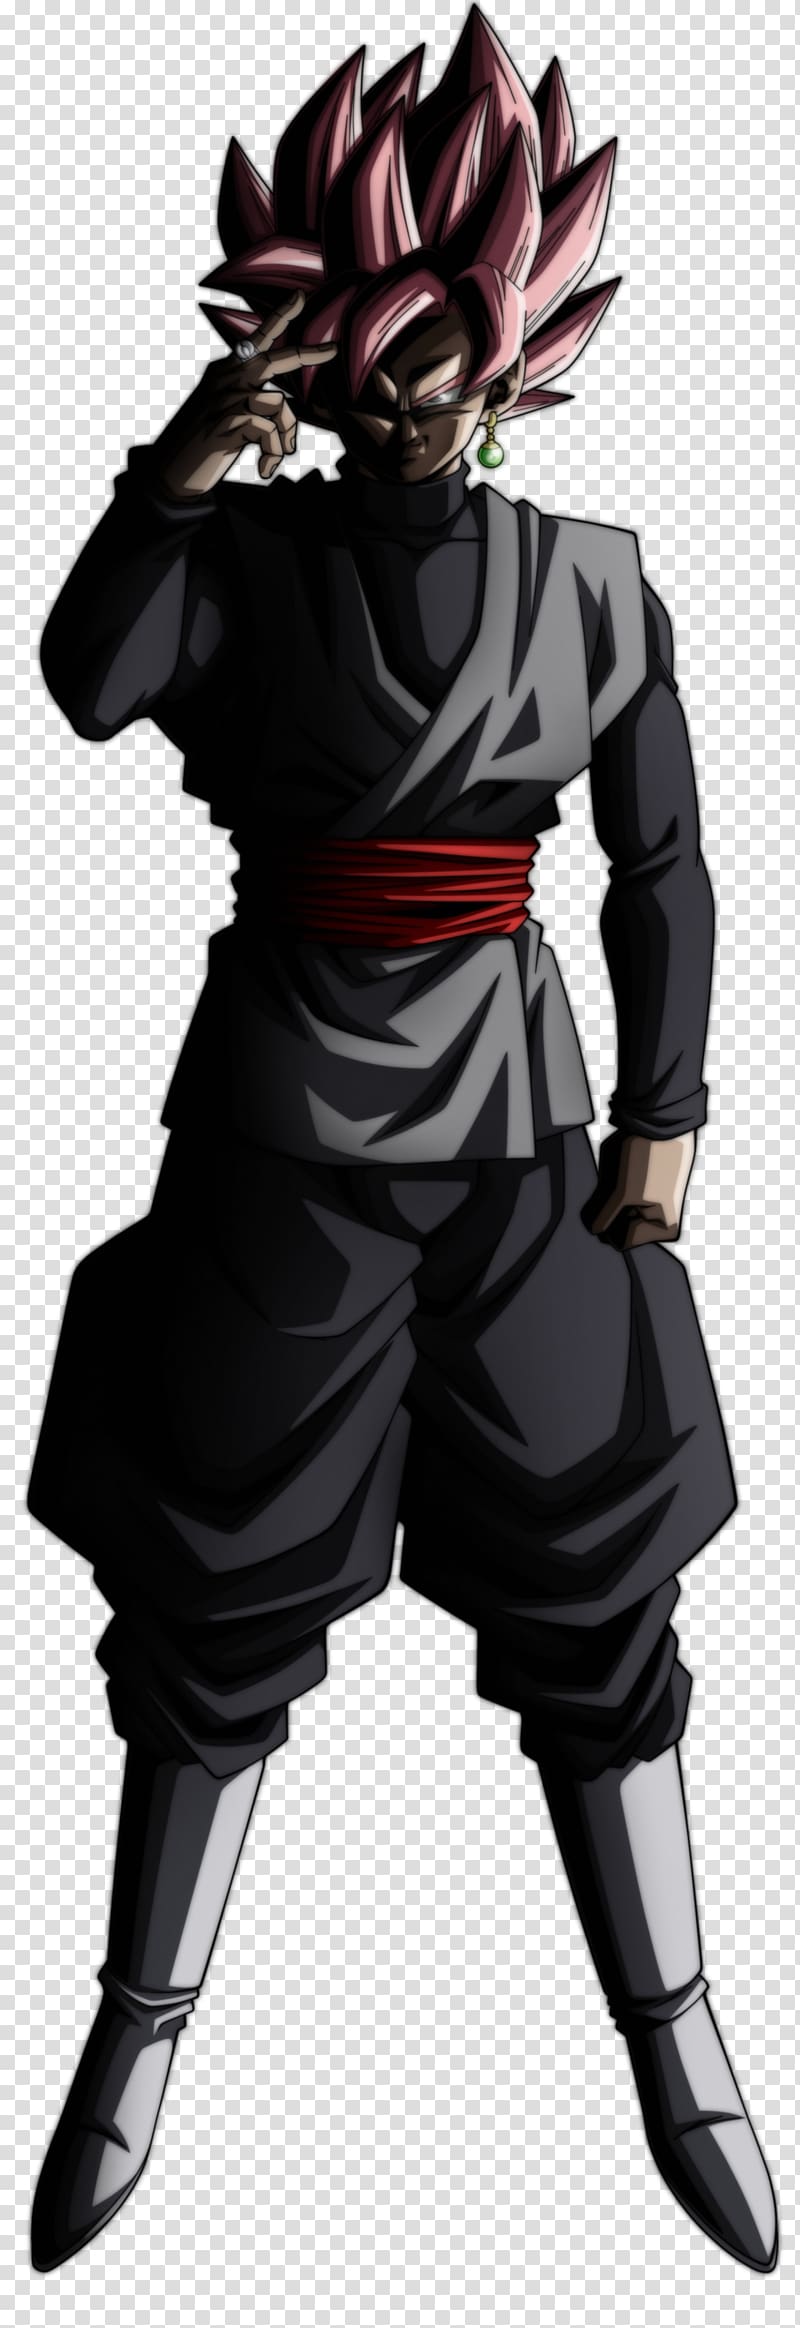 Goku Black Trunks Super Saiyan Dragon Ball, goku transparent background PNG clipart